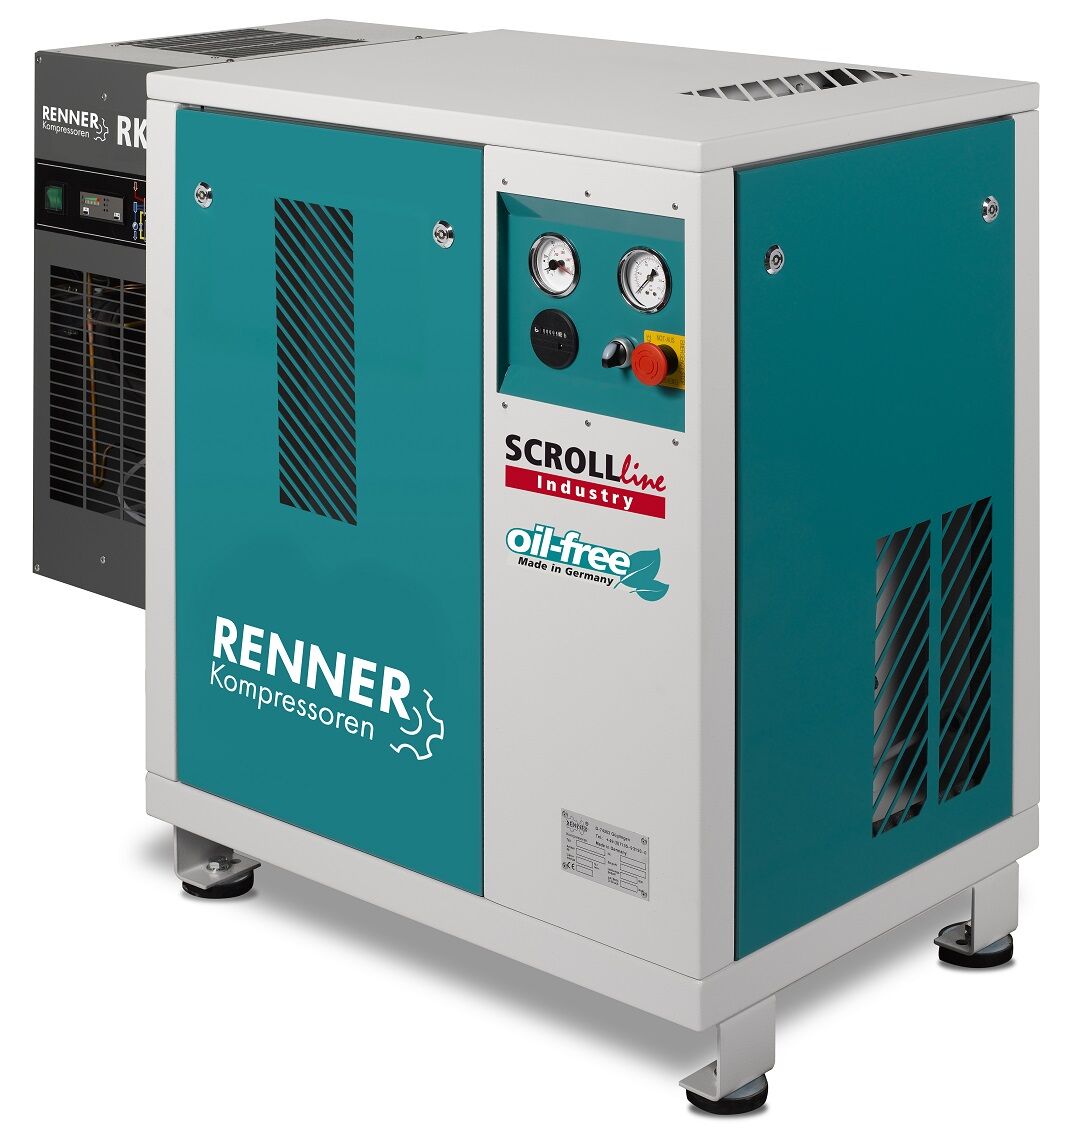 RENNER-Kompressor SLK-I 3,7 mit Kältetrockner - Industry ölfreier Scrollkompressor